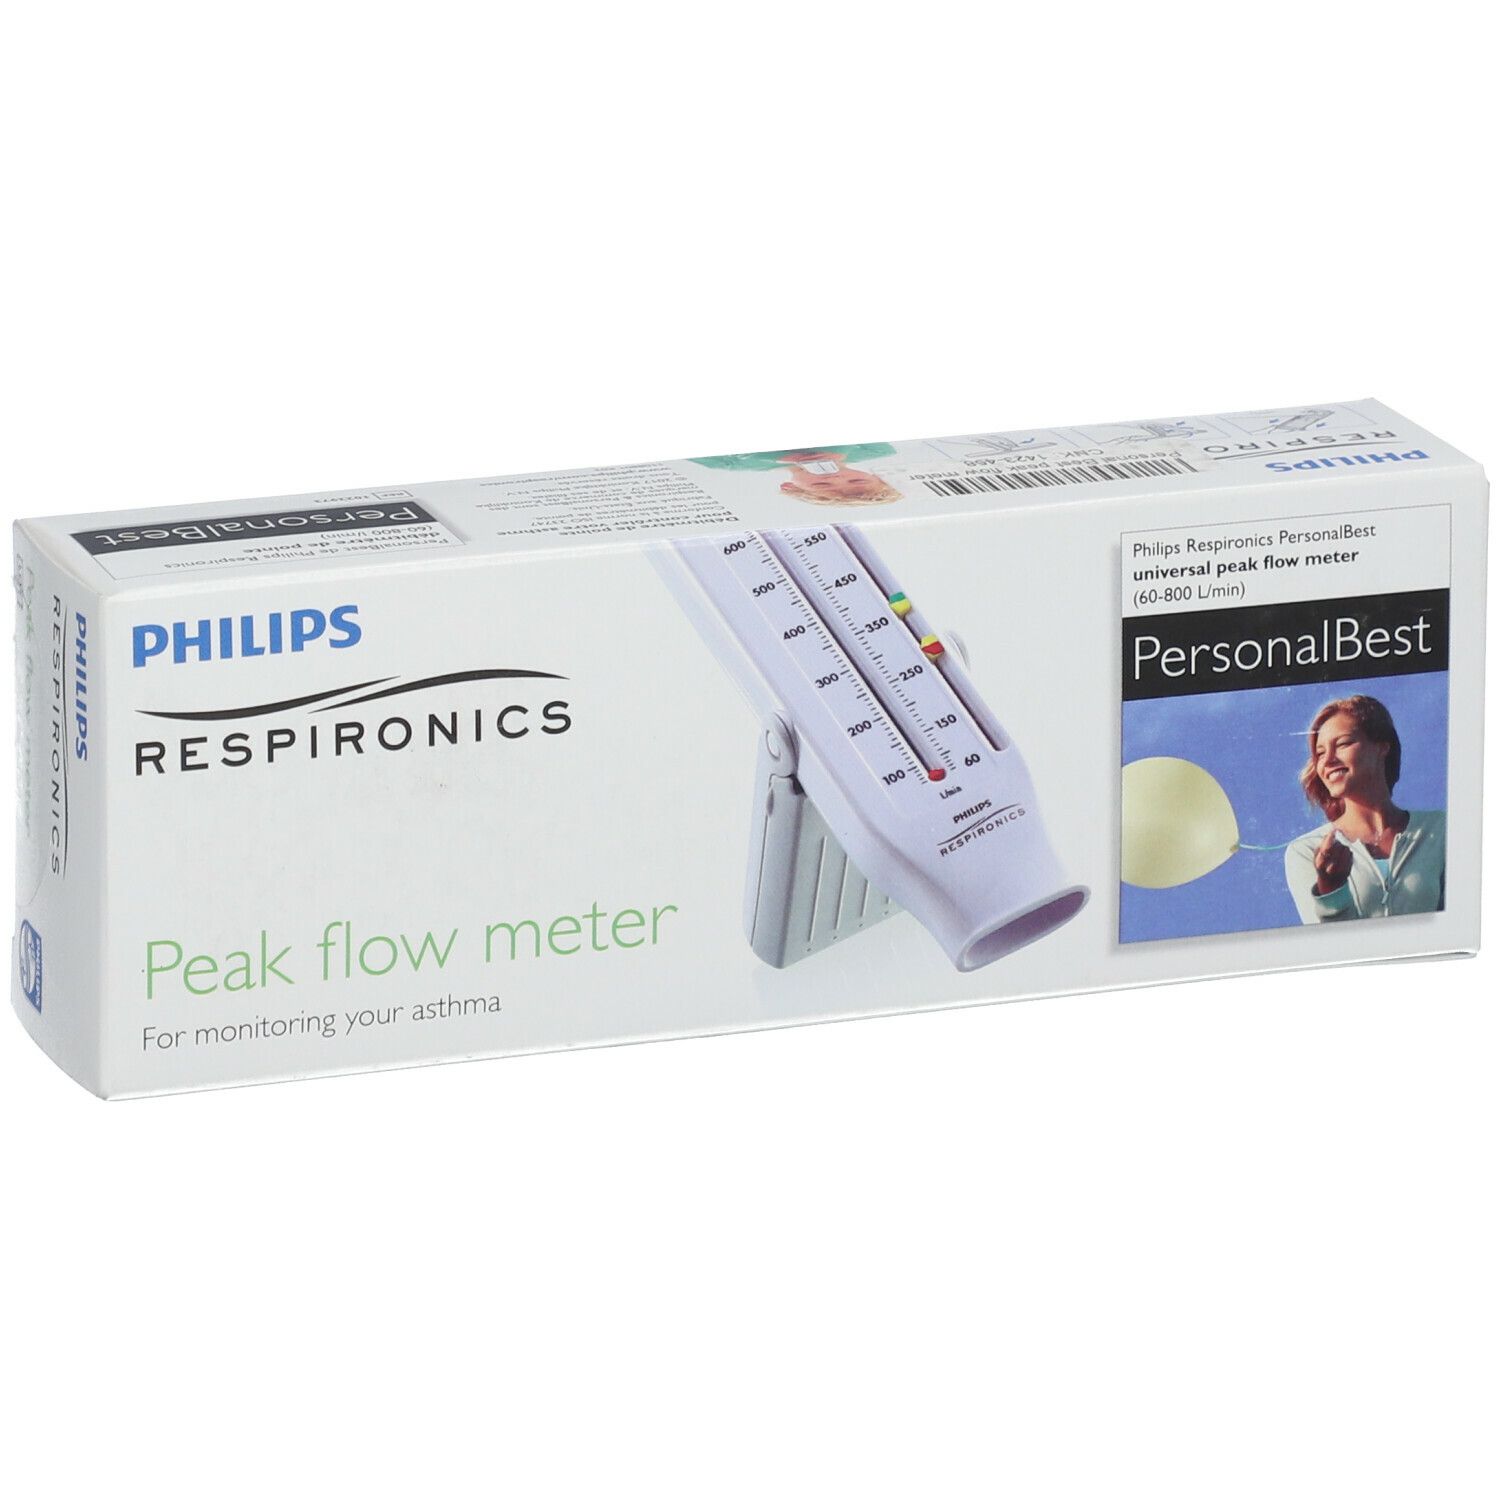 PHILIPS Respironics Peak Flow Meter